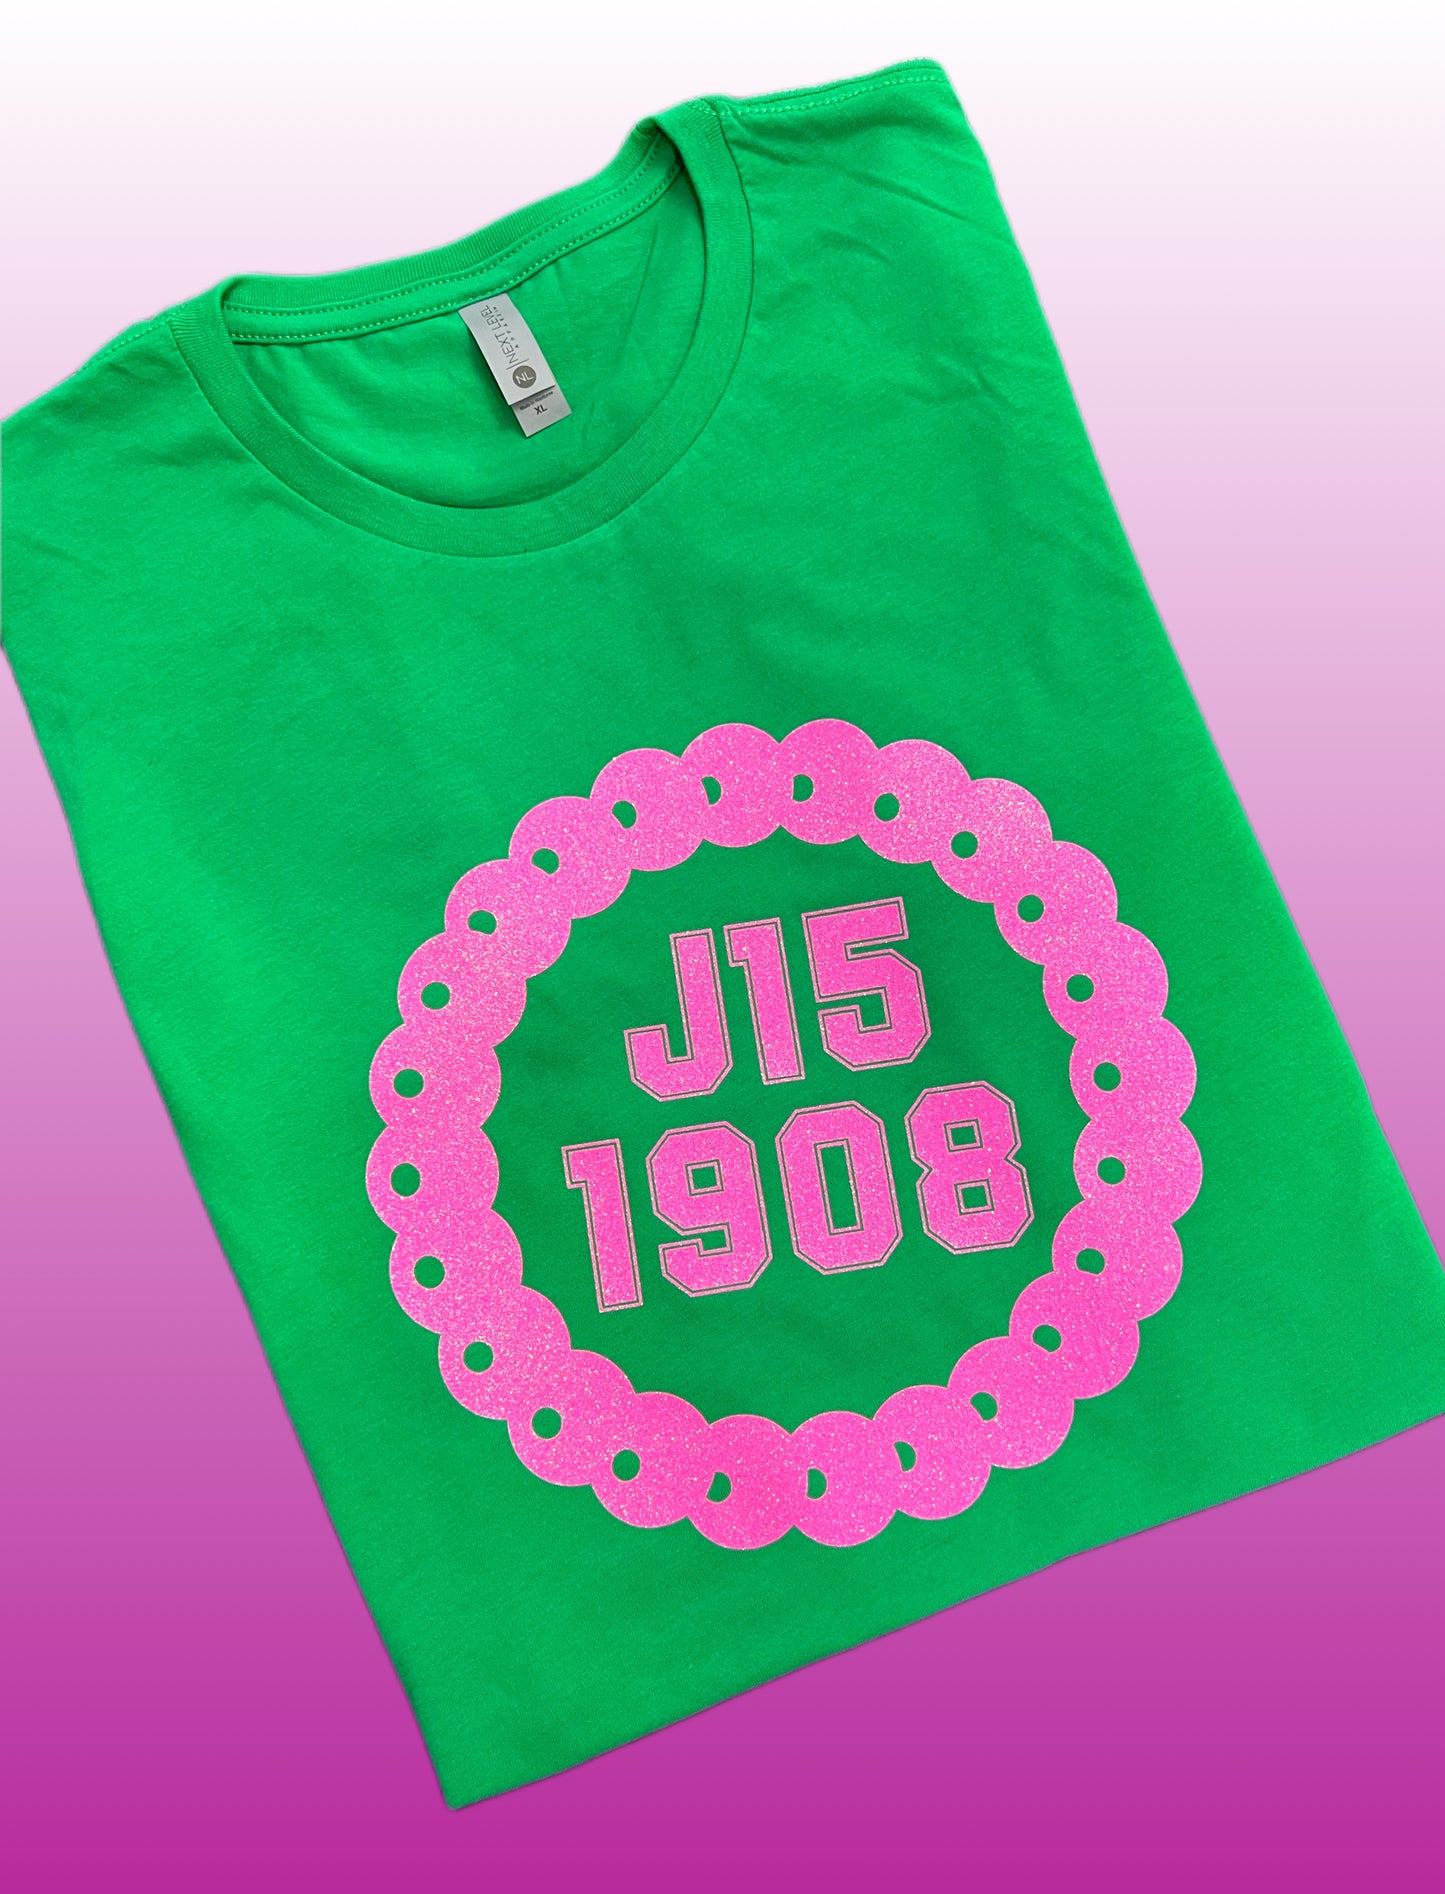 J15 1908 Shirt